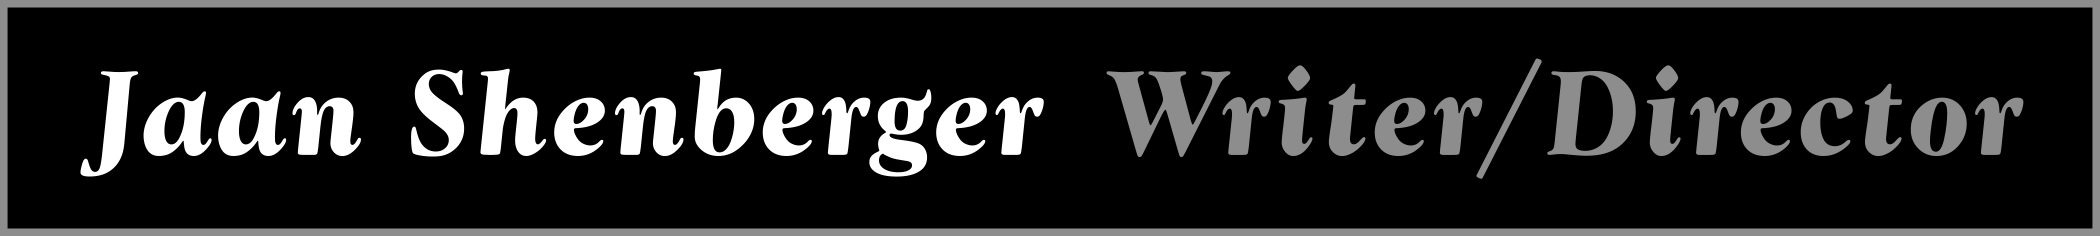 Jaan Shenberger Writer Director logo